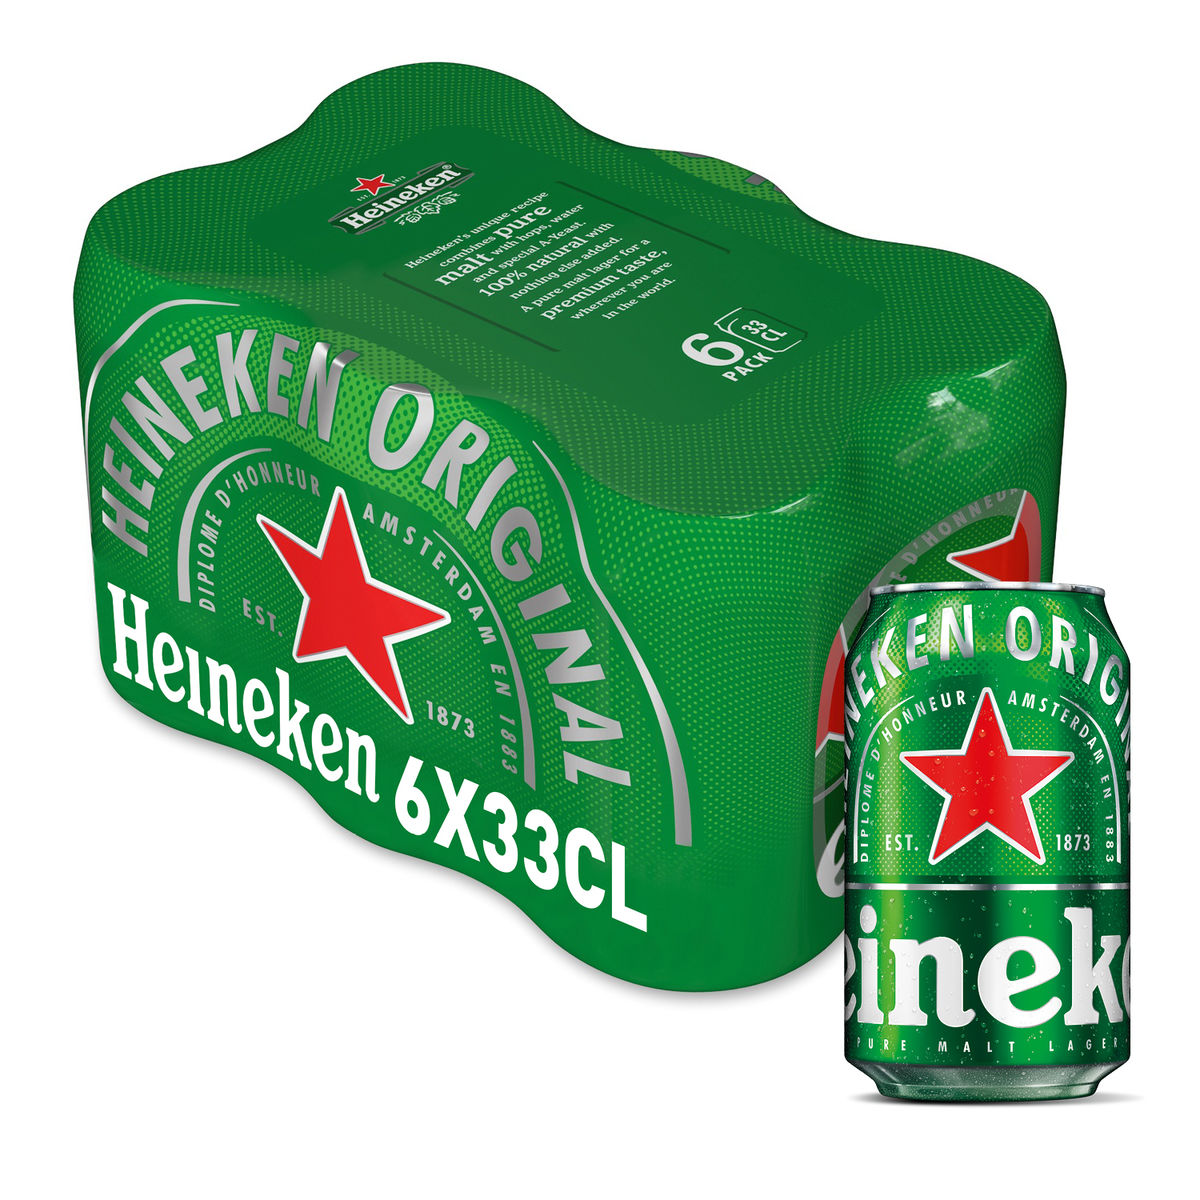 Heineken Bière blonde Pils 5% ALC 6 x 33 cl Canette